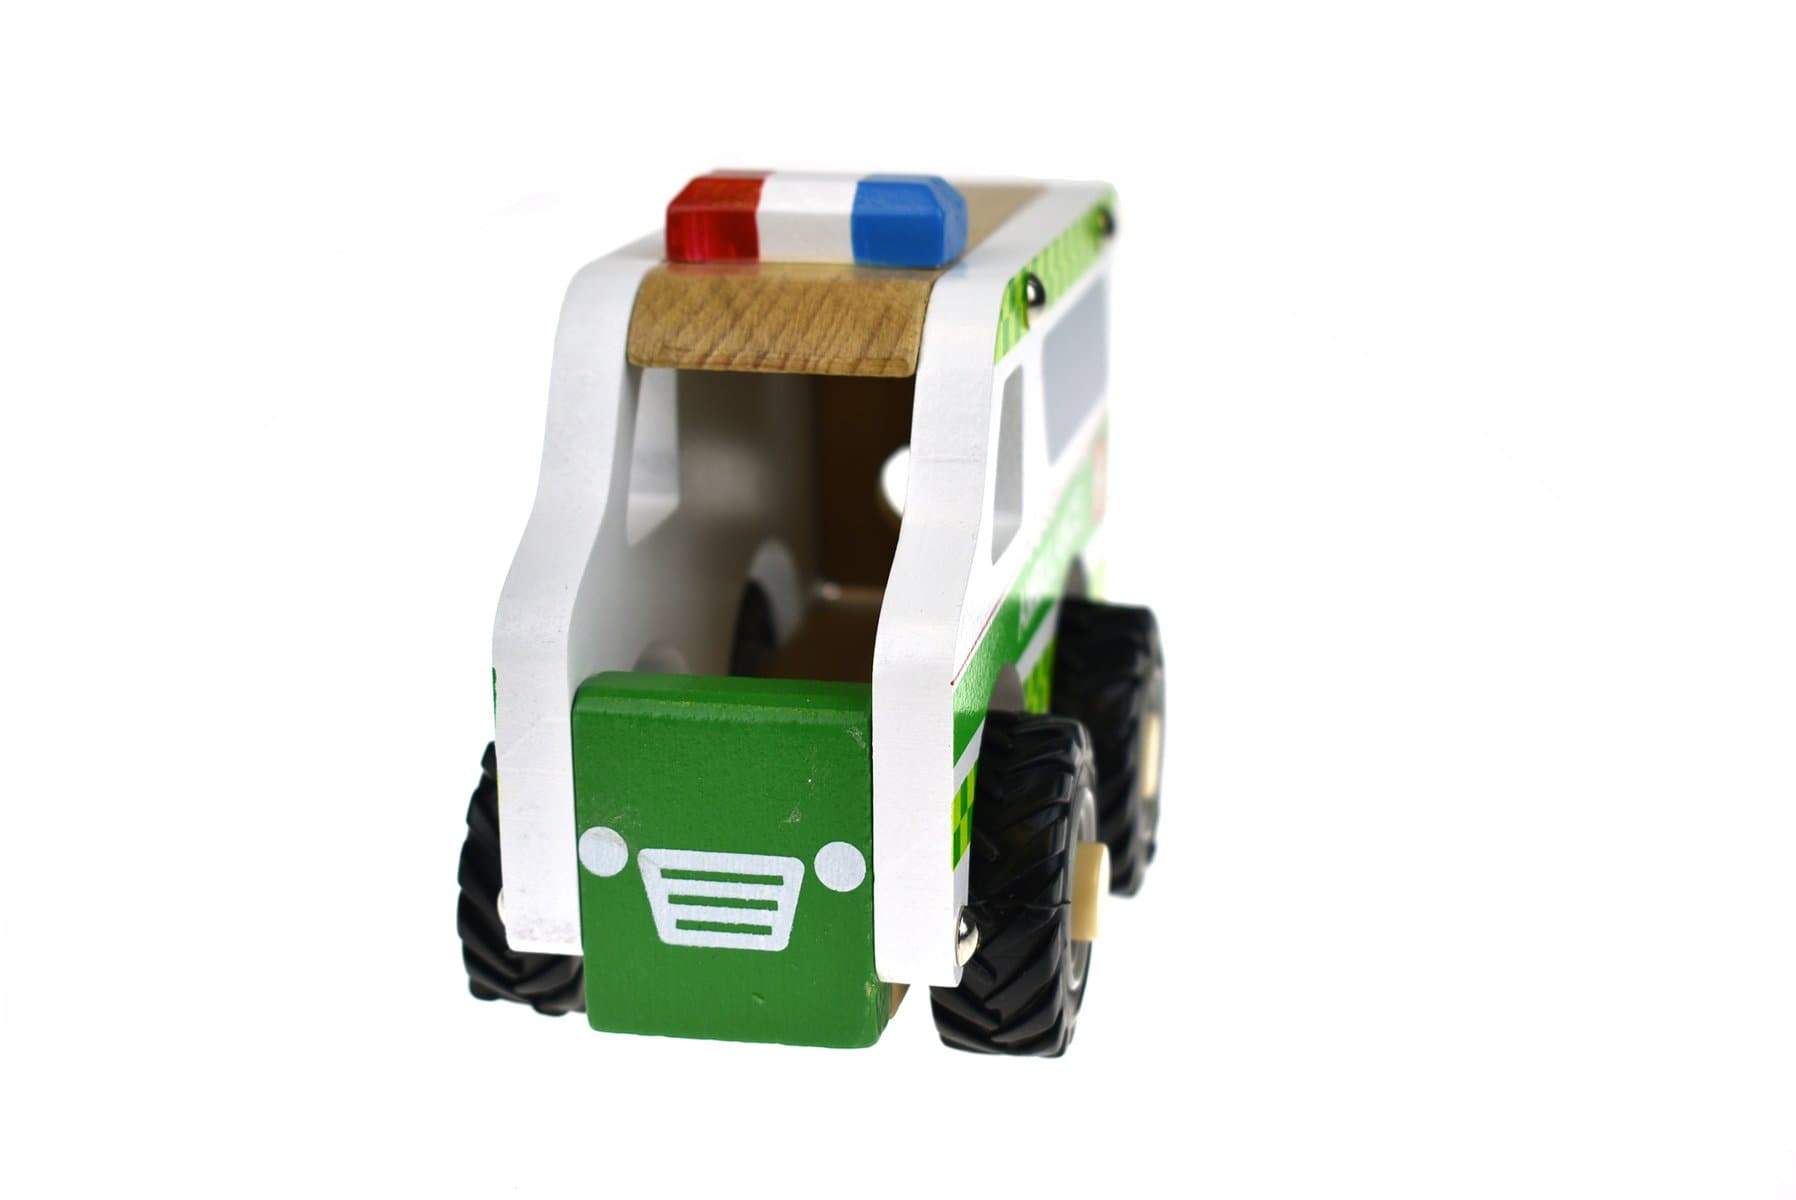 toys for infant Kd Wooden Ambulance